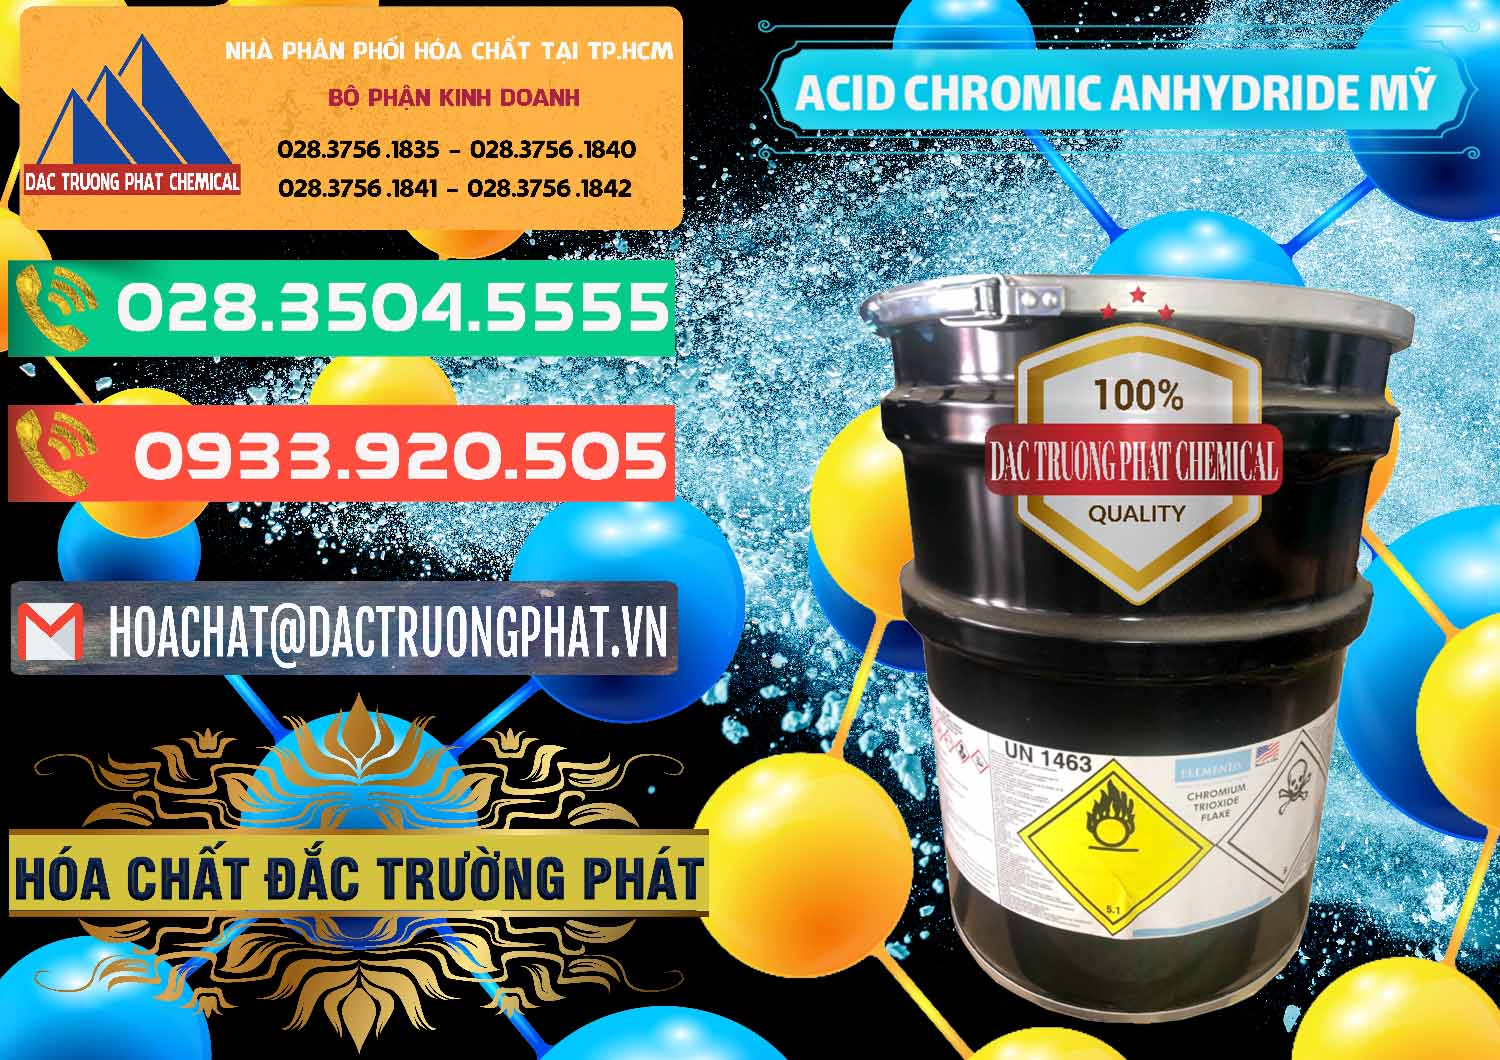 Công ty bán - cung cấp Acid Chromic Anhydride - Cromic CRO3 USA Mỹ - 0364 - Cty chuyên cung cấp & kinh doanh hóa chất tại TP.HCM - congtyhoachat.com.vn